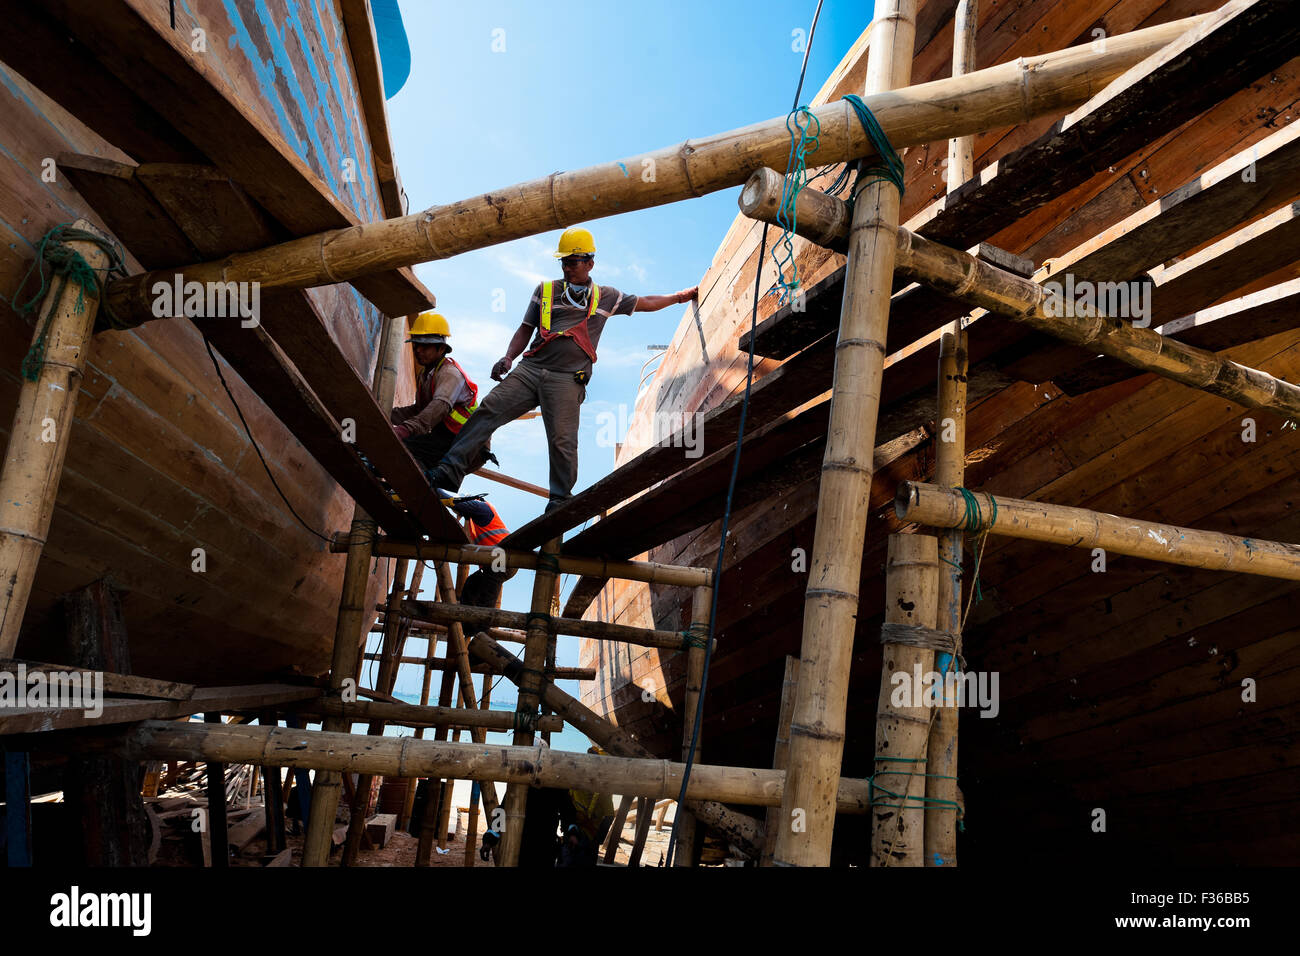 Costruzione navale ecuadoriana lavoratori di fornire servizi di manutenzione per il legno tradizionale delle navi da pesca in un cantiere navale a Manta, Ecuador. Foto Stock